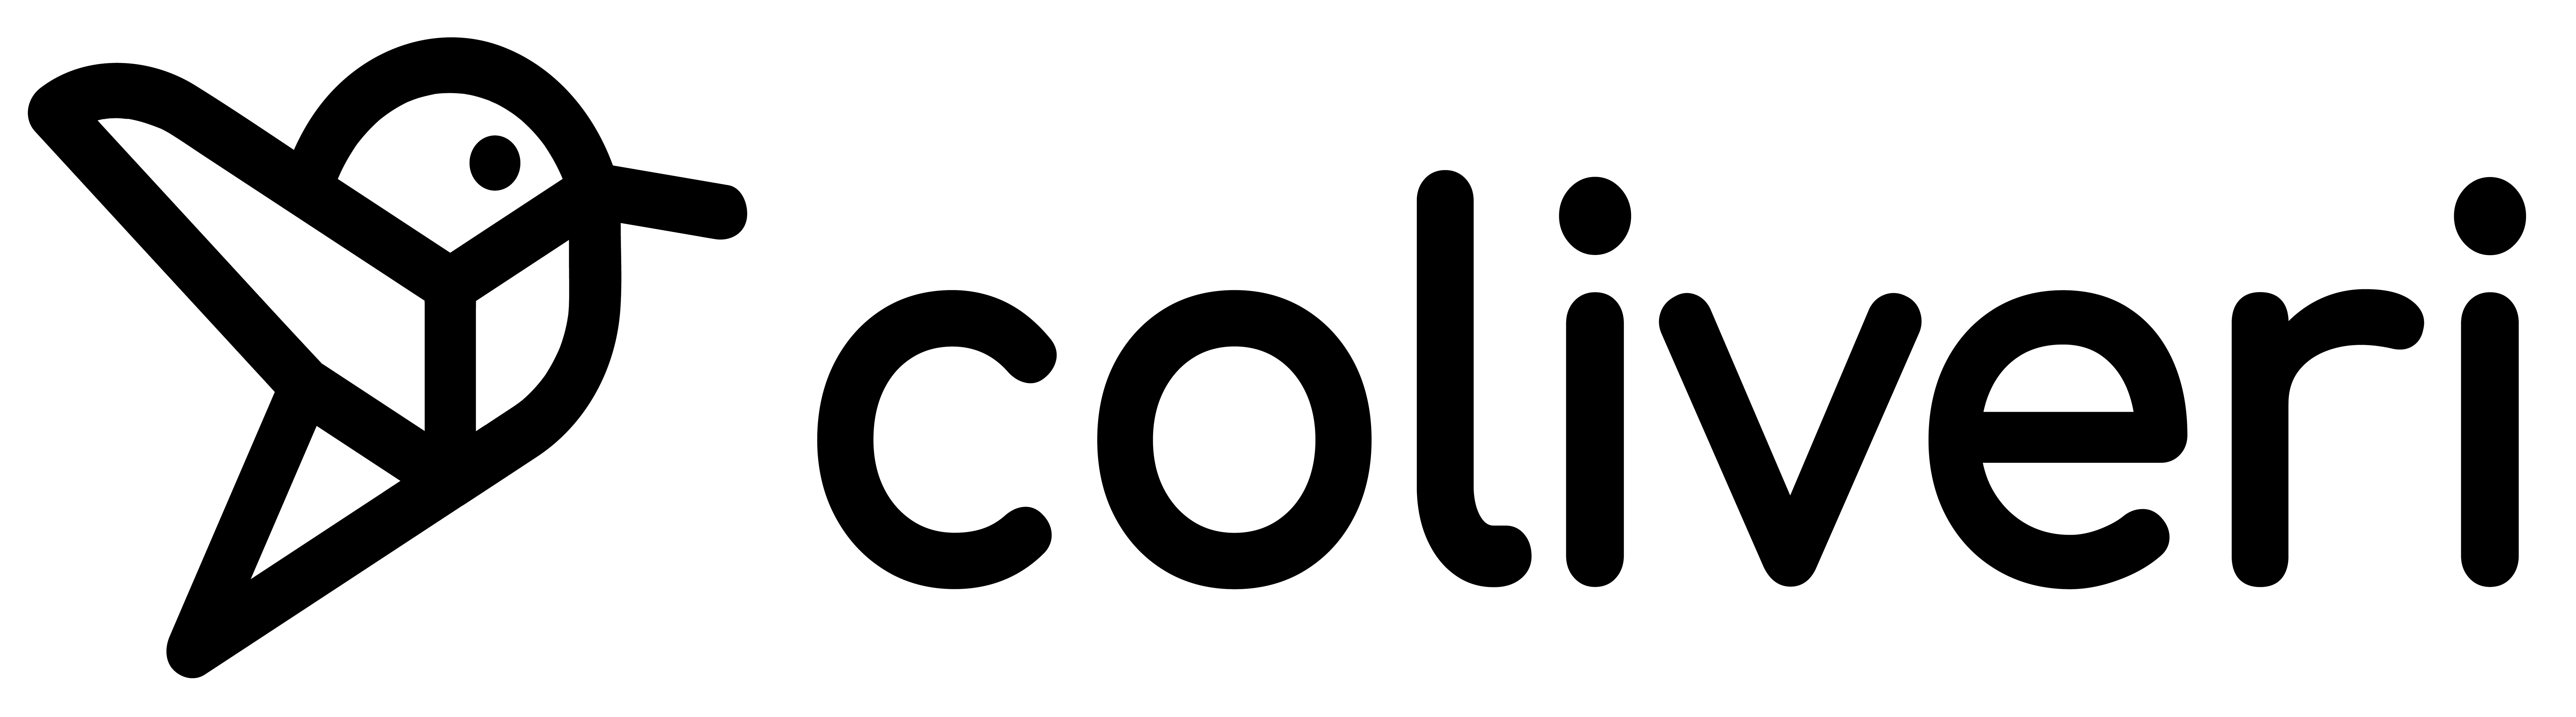 coliveri-logo-02-1